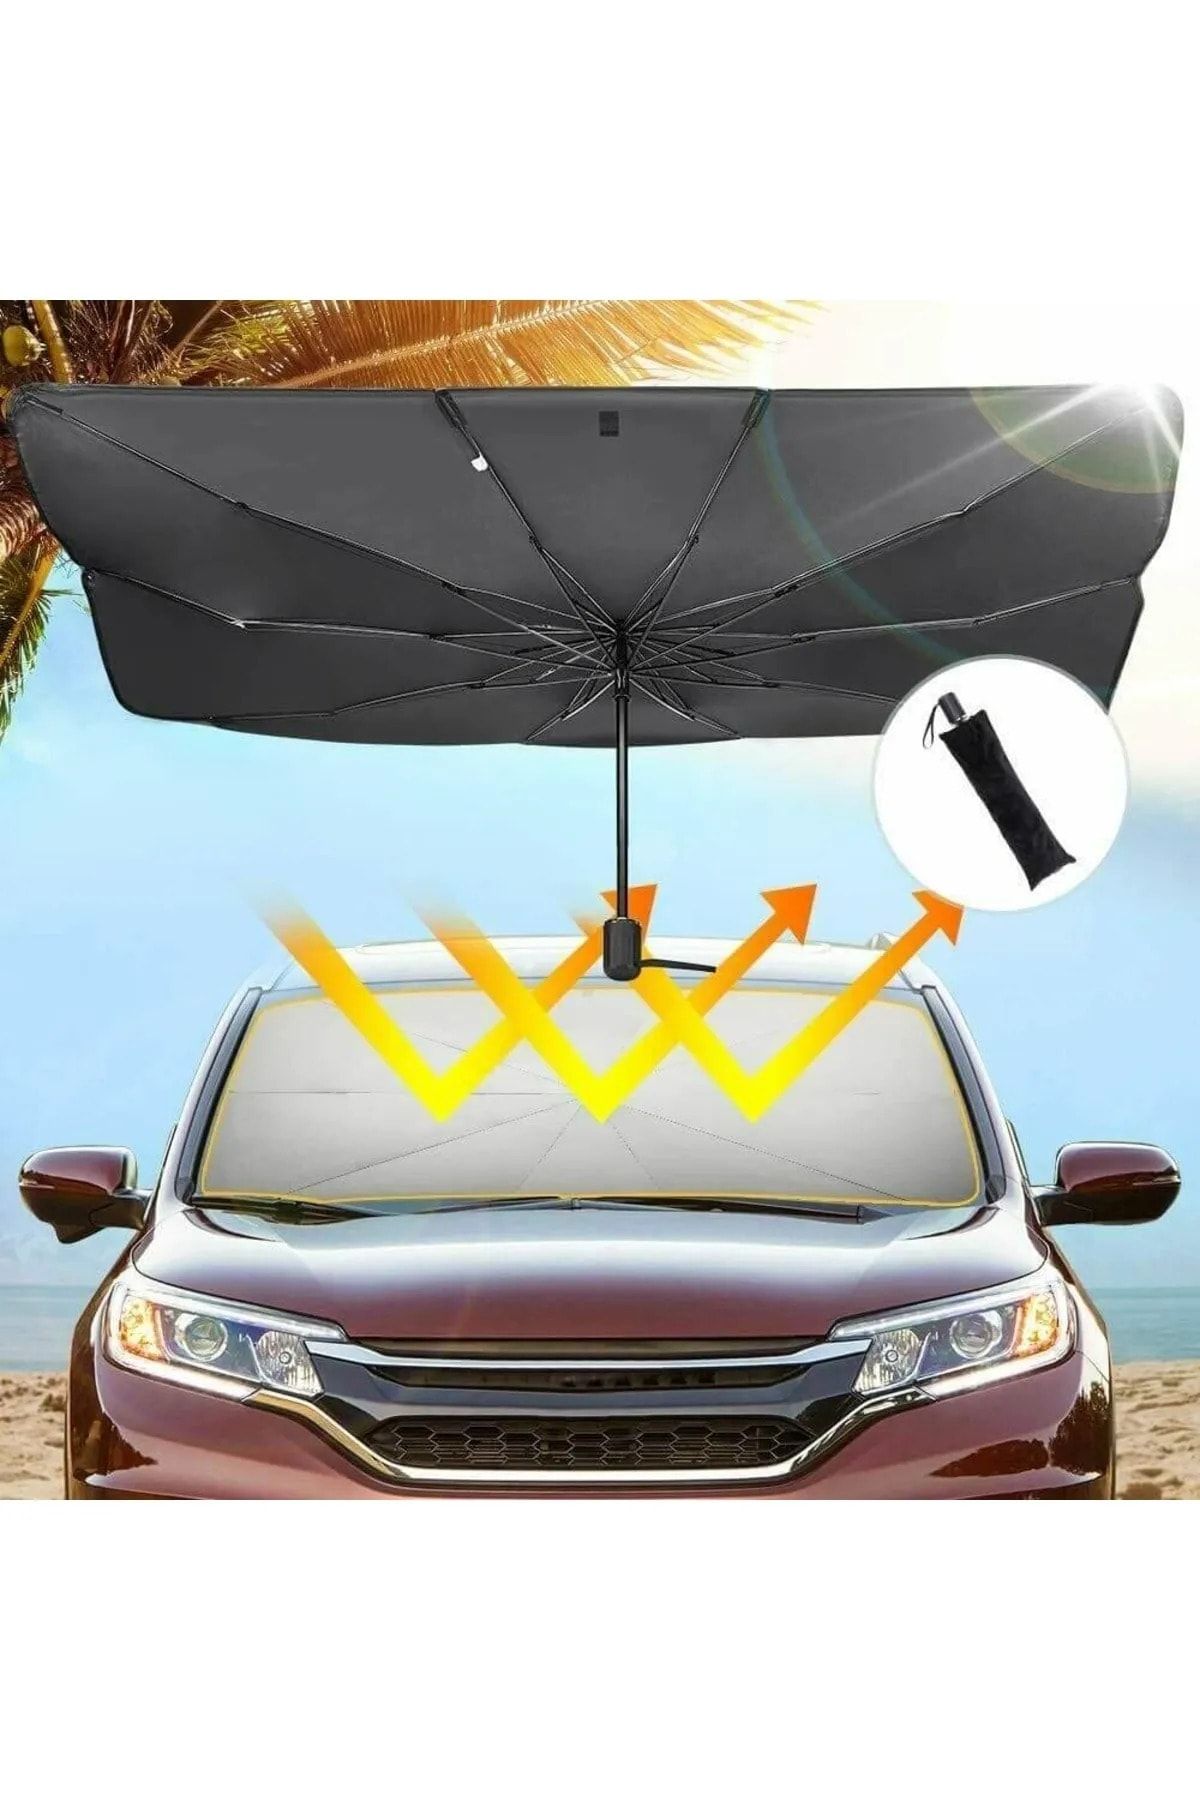 Universal Renault Megane Araba Ön Cam Güneşlik Katlanabilir Güneşlik Şemsiye Ön Cam Gölgelik